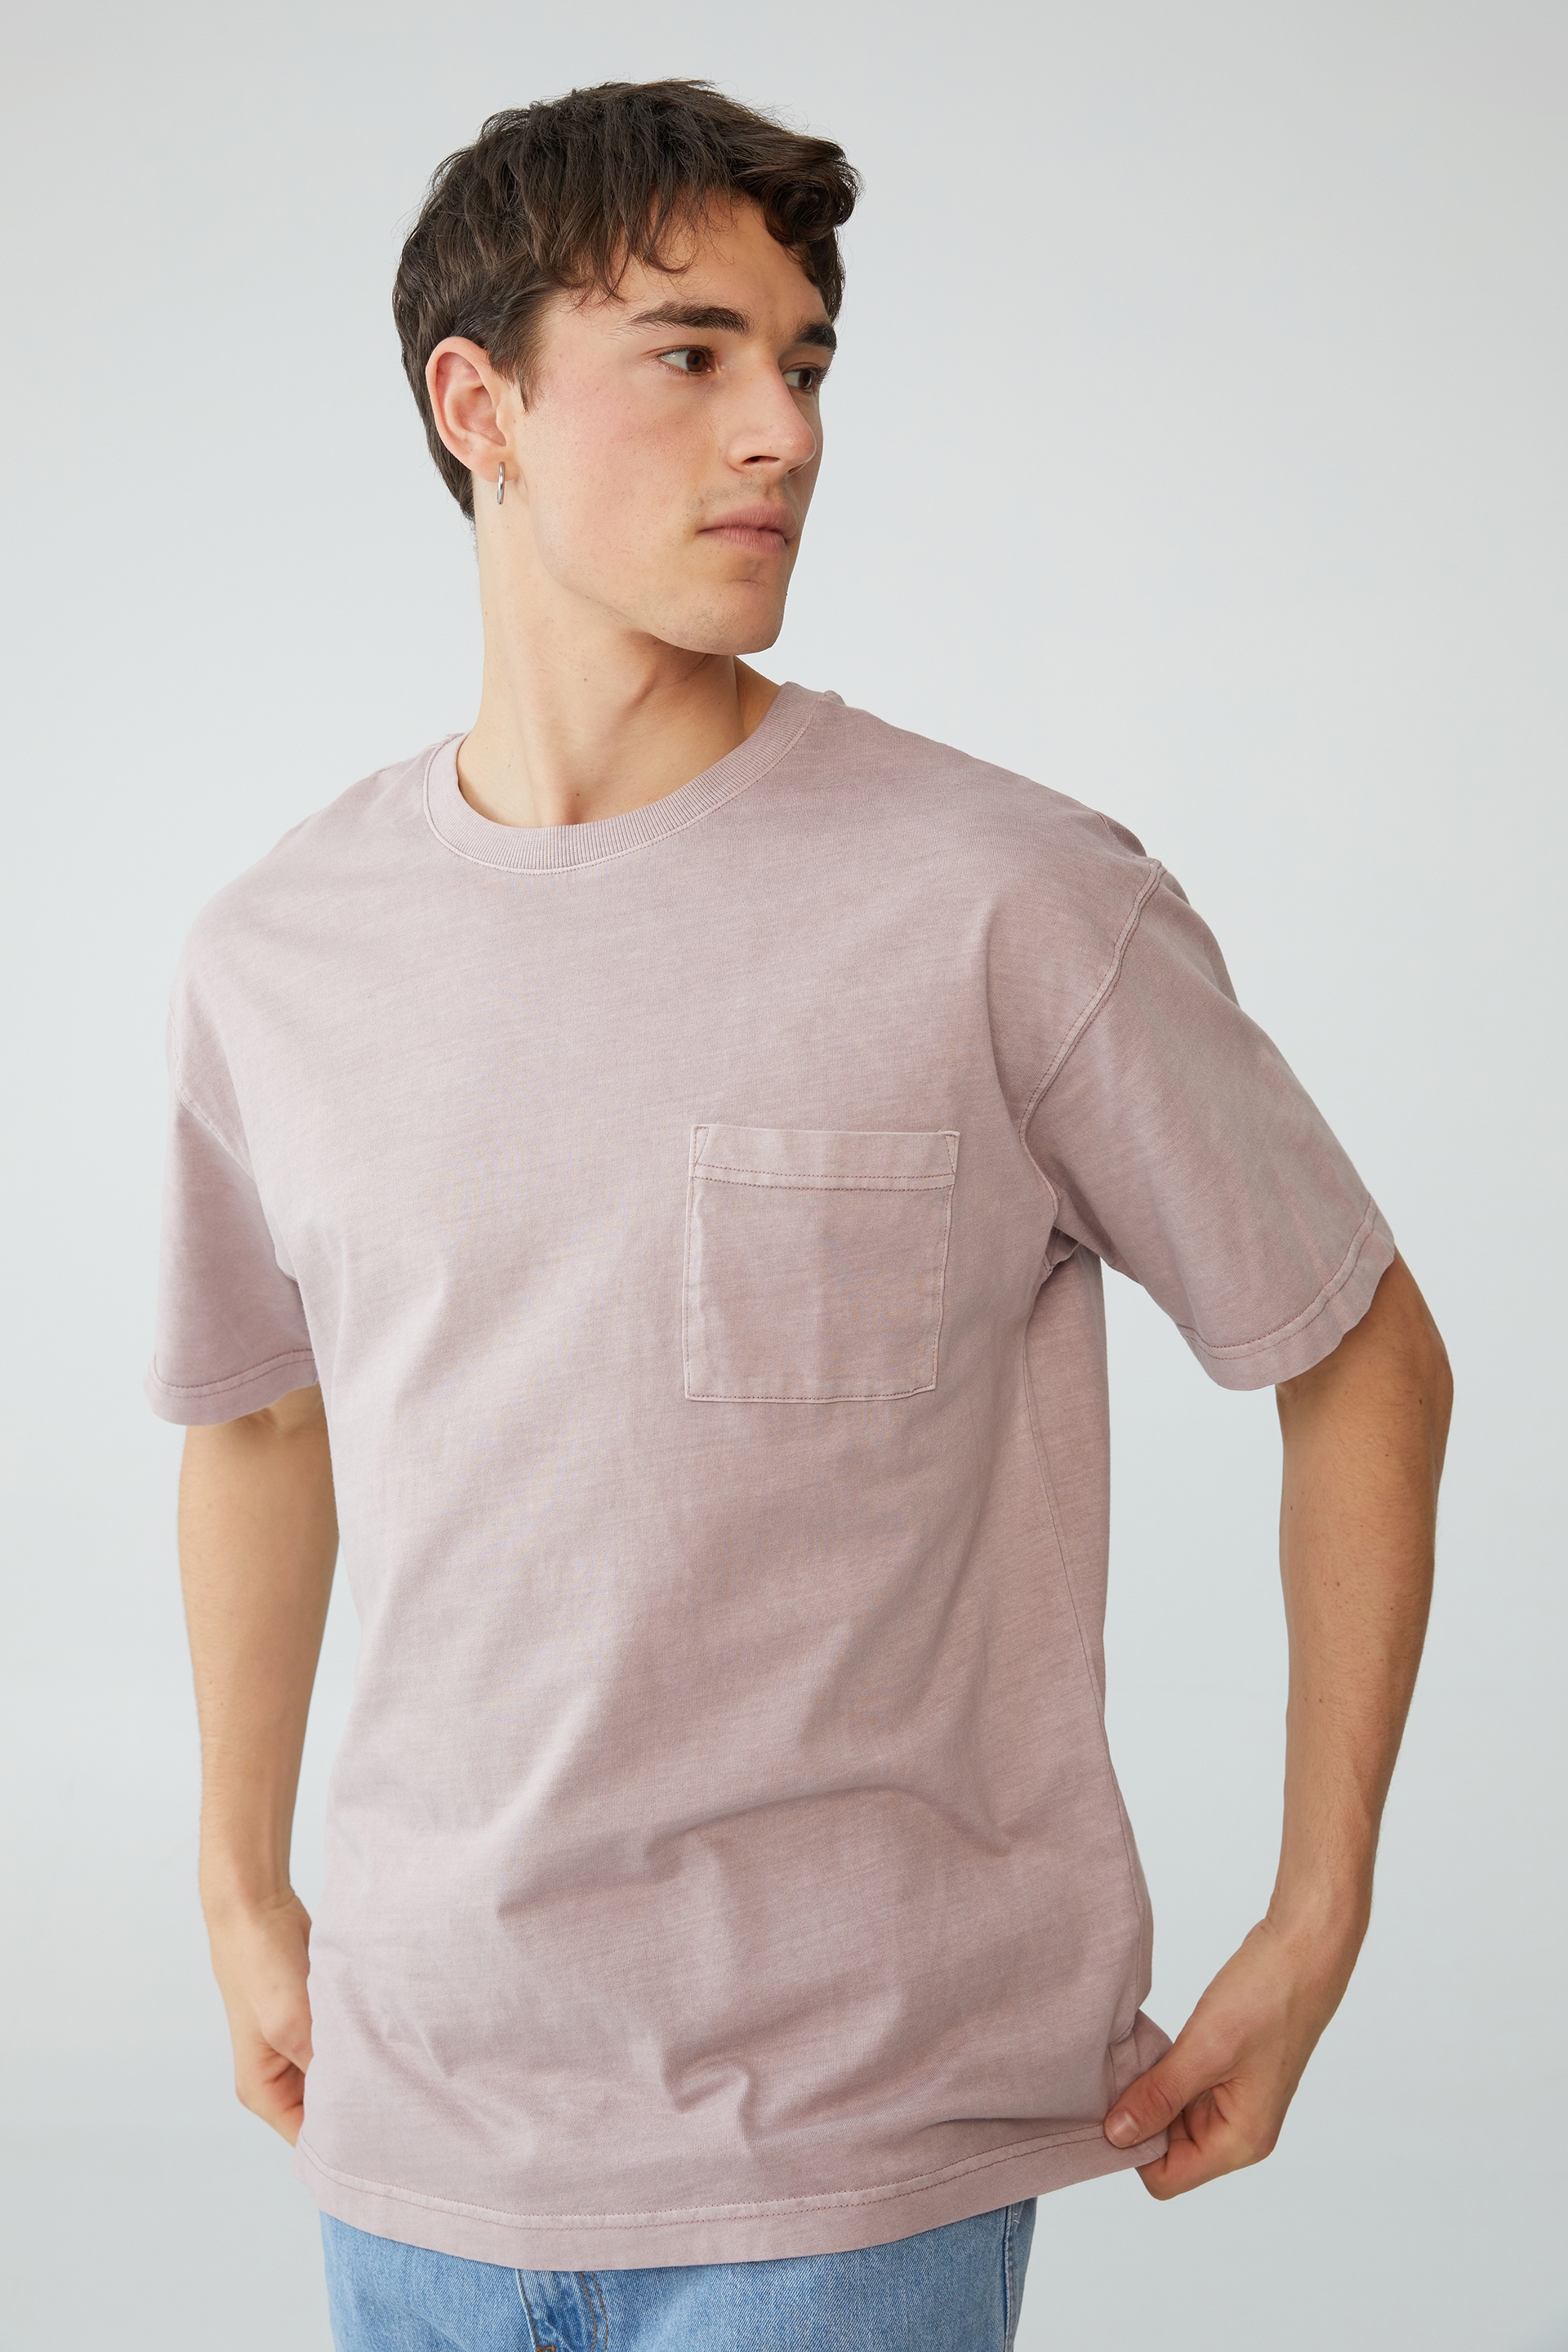 Cotton On Men - Loose Fit T-Shirt - Mauve